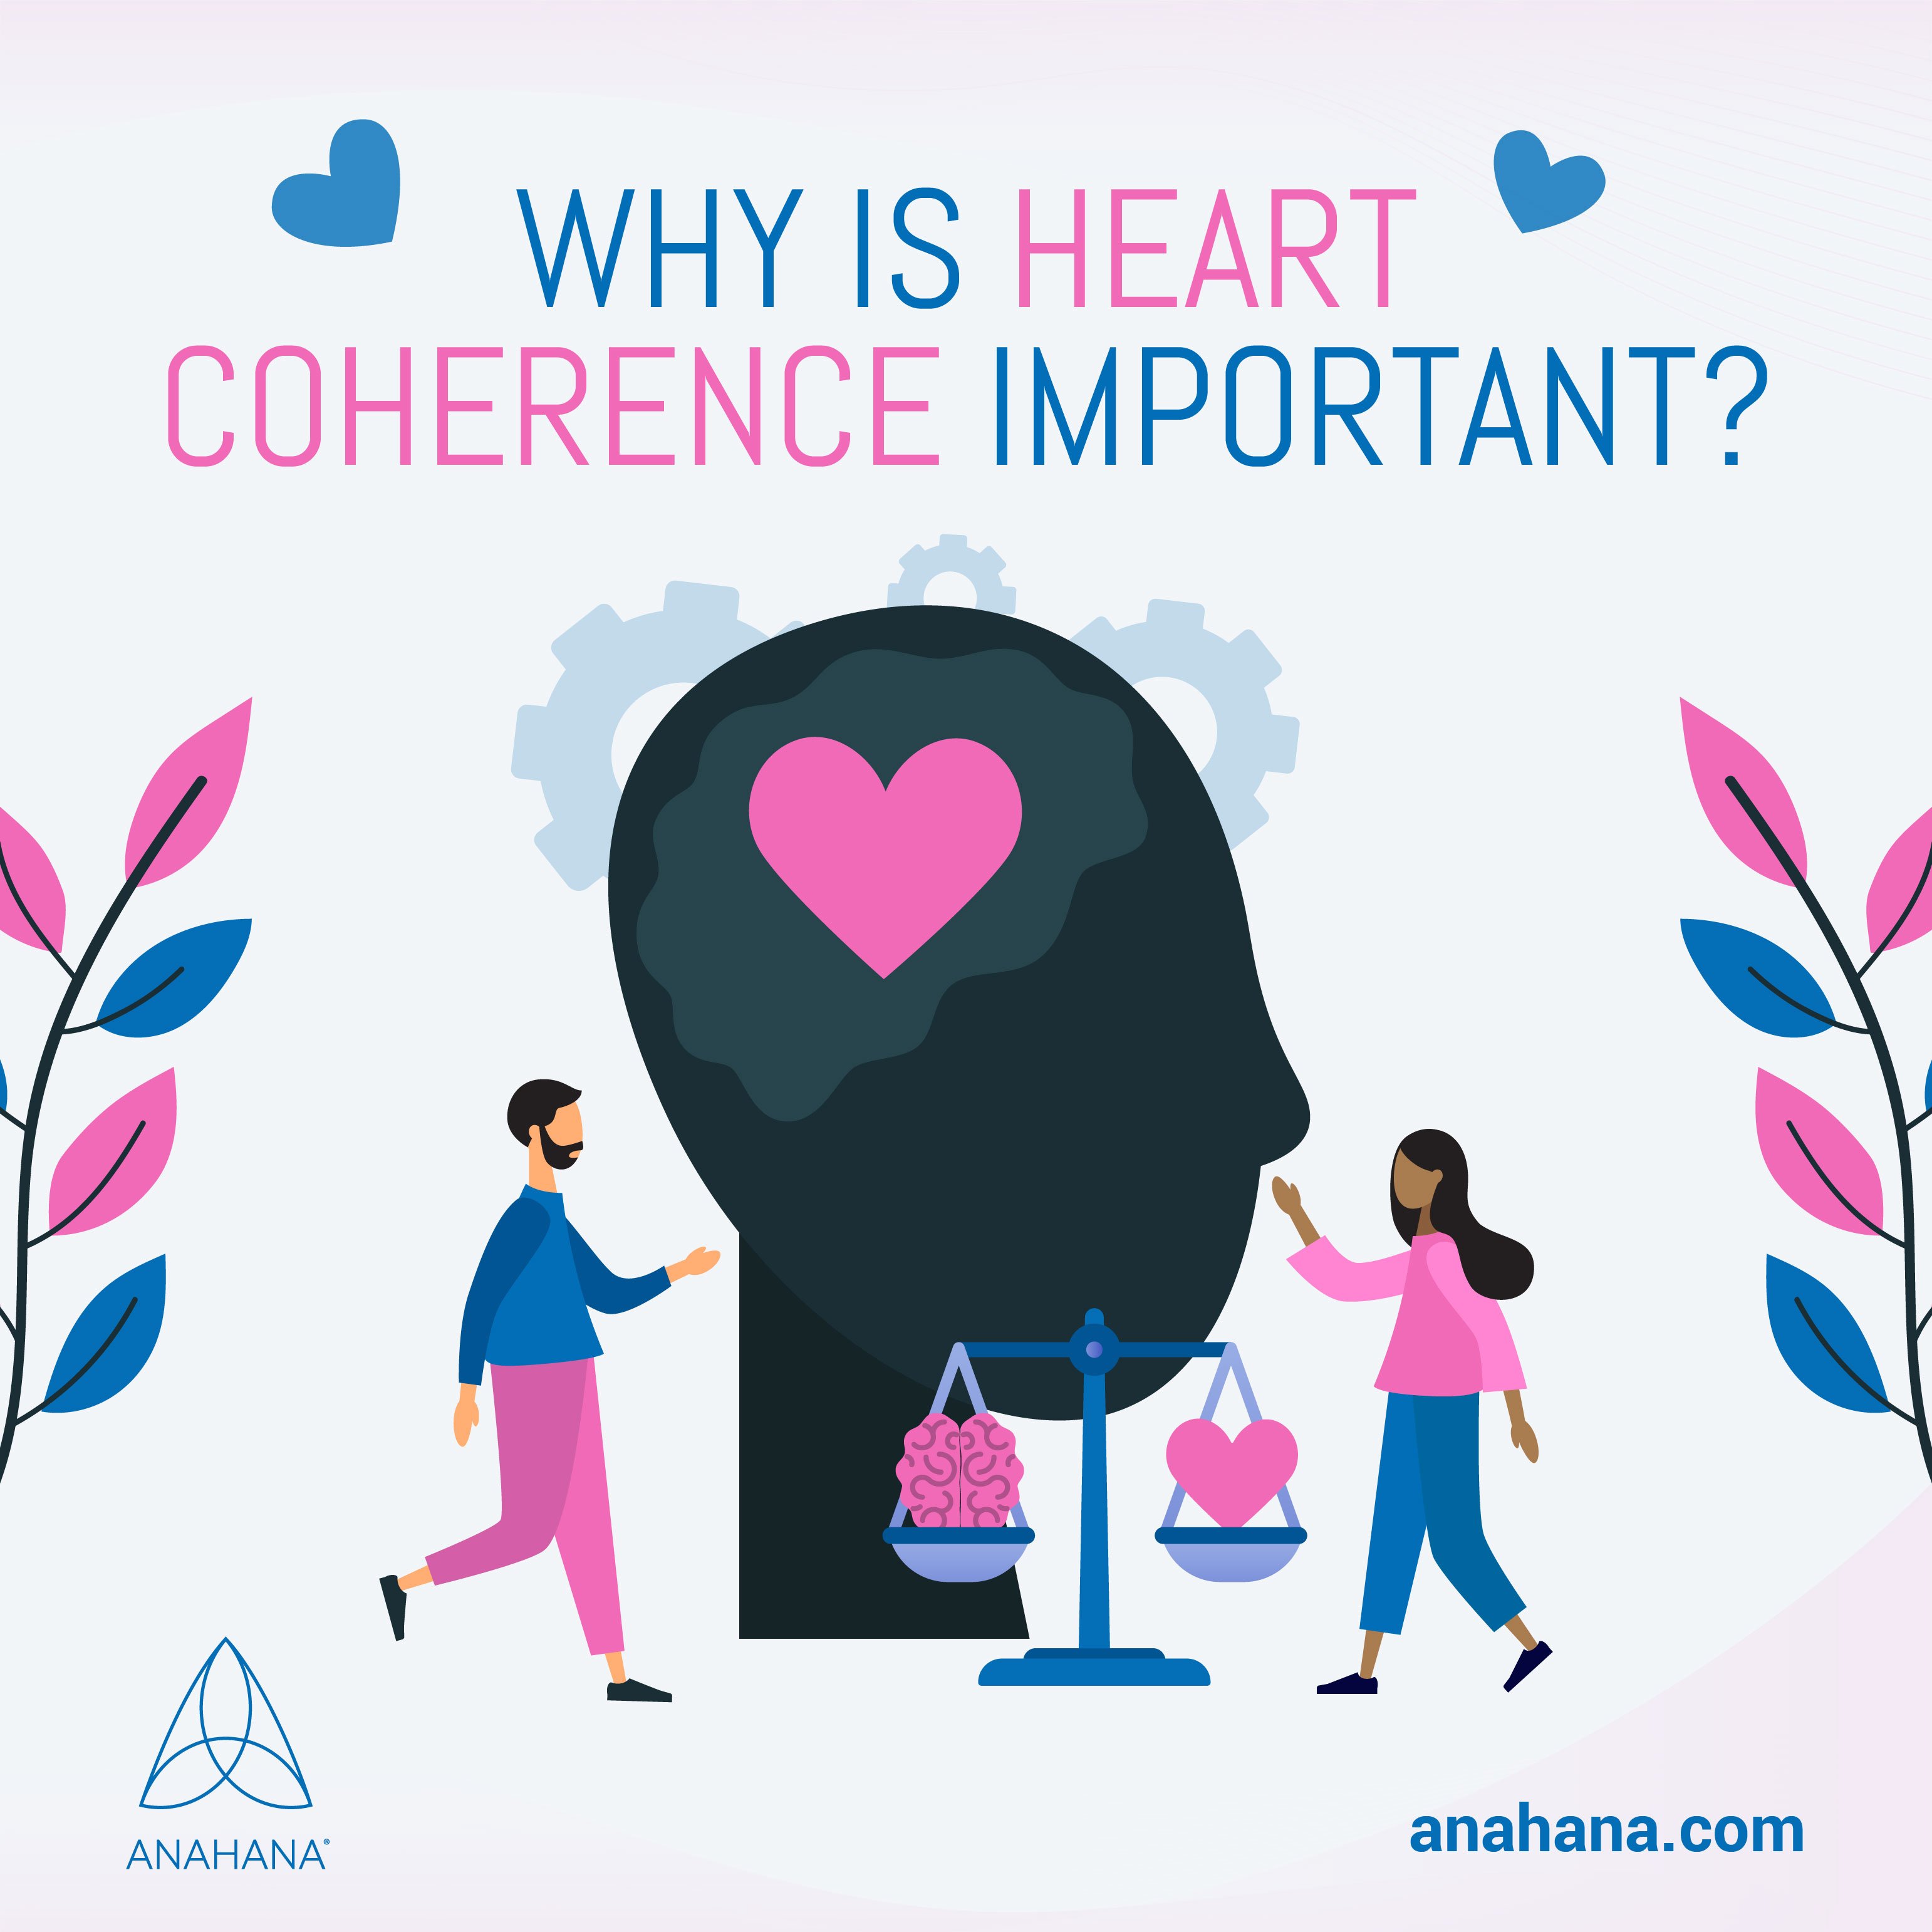 ¿Por qué es importante la coherencia cardíaca?